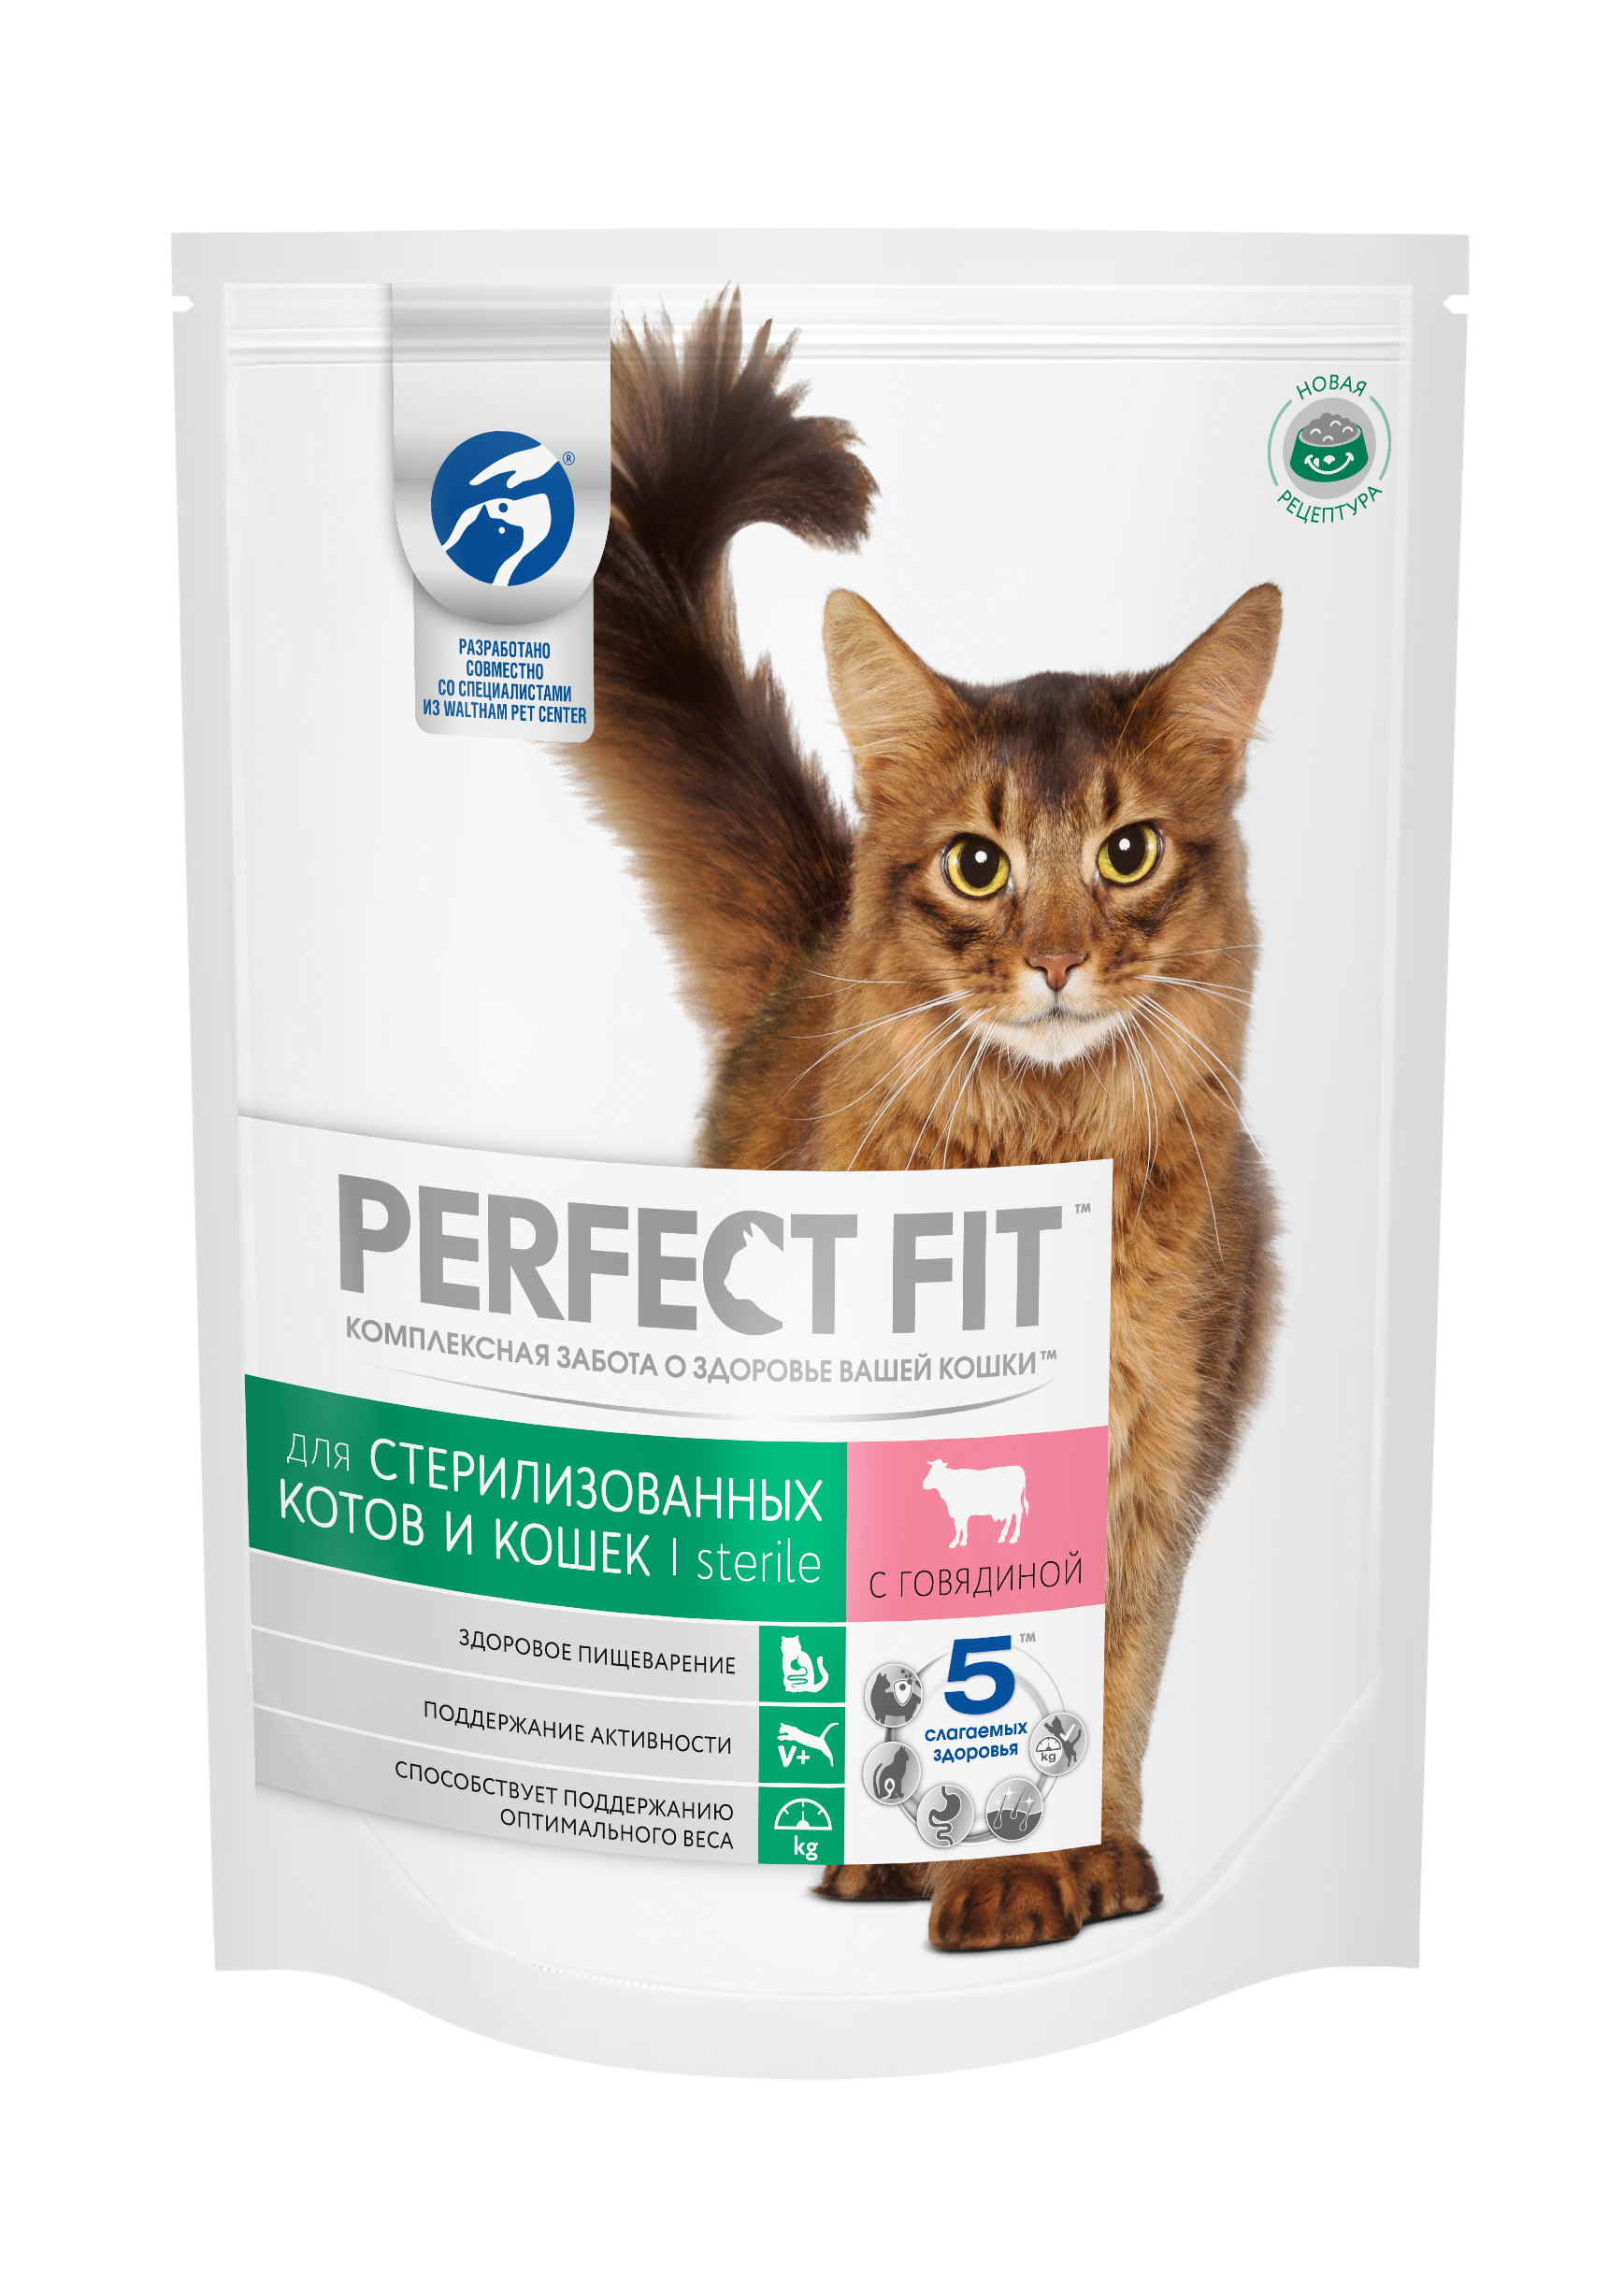 Сухой корм для котят - какой лучше: рейтинг по качеству и отзывы ветеринаров